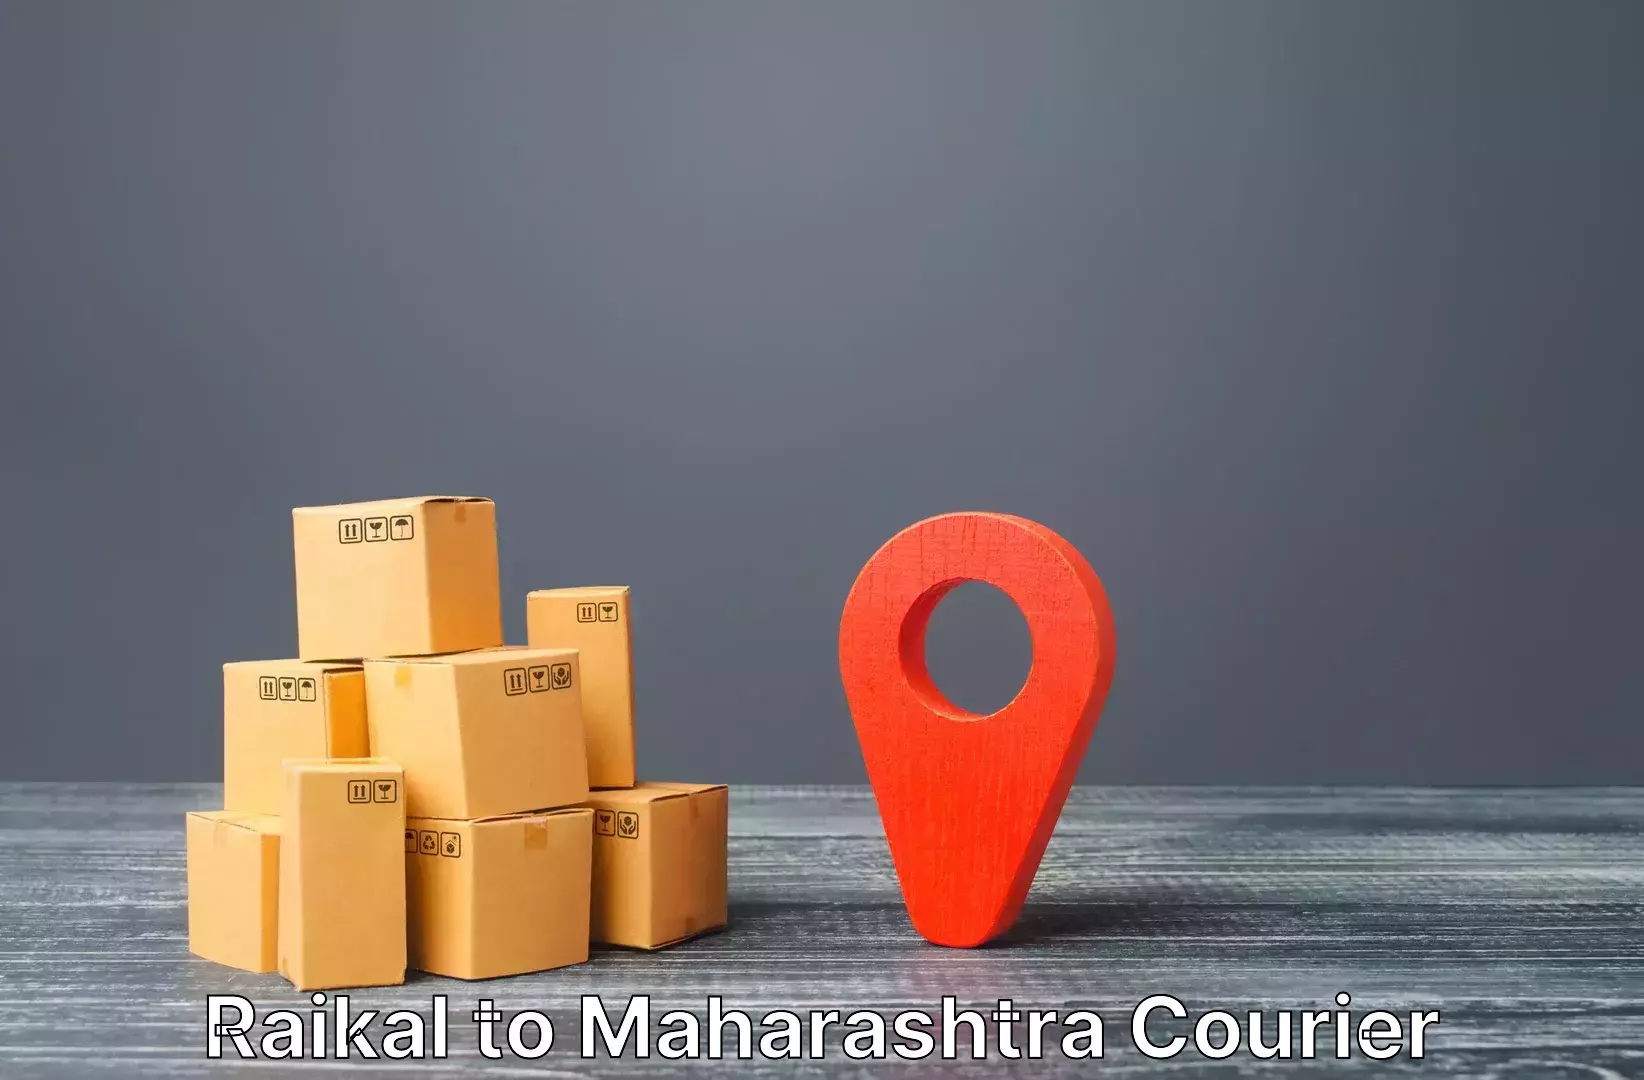 Luggage delivery providers Raikal to Mahim